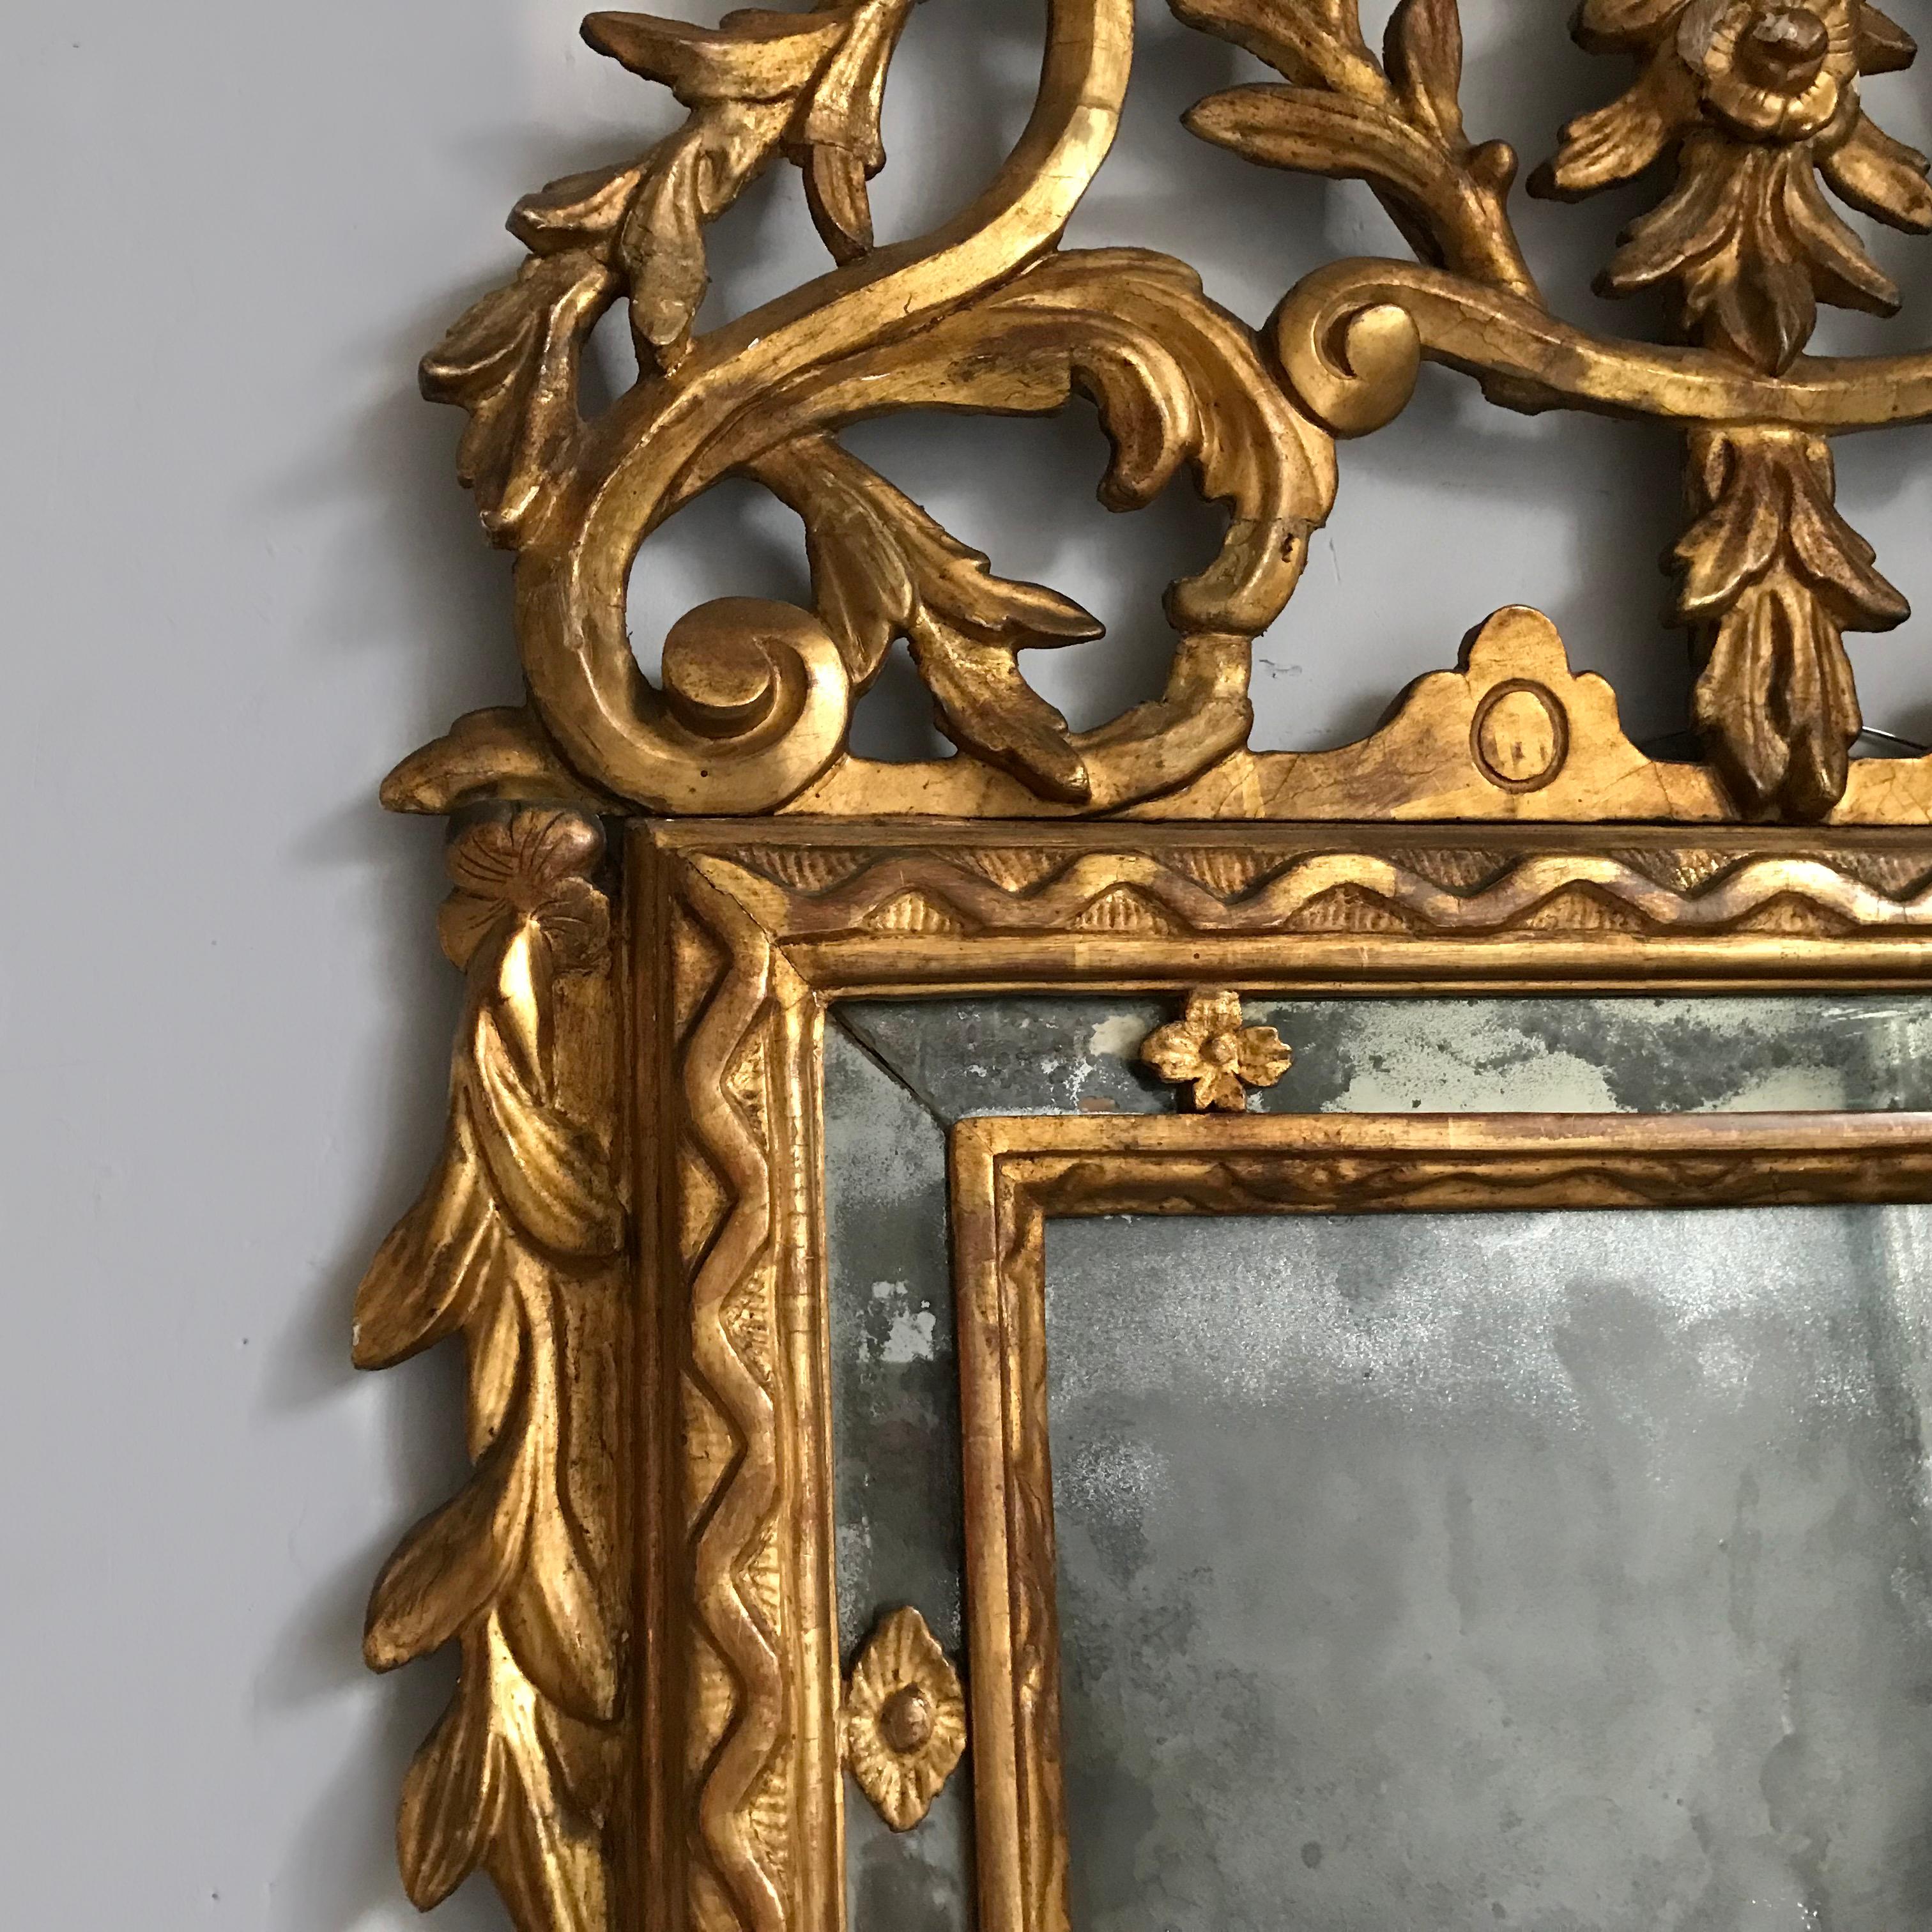 Ce miroir en bois doré d'Italie du Nord, datant de la fin du XVIIIe siècle, a étonnamment conservé sa plaque de verre au mercure d'origine, merveilleusement rouillée, dans un cadre en miroir entouré d'une sculpture continue en zigzag. Le tablier et